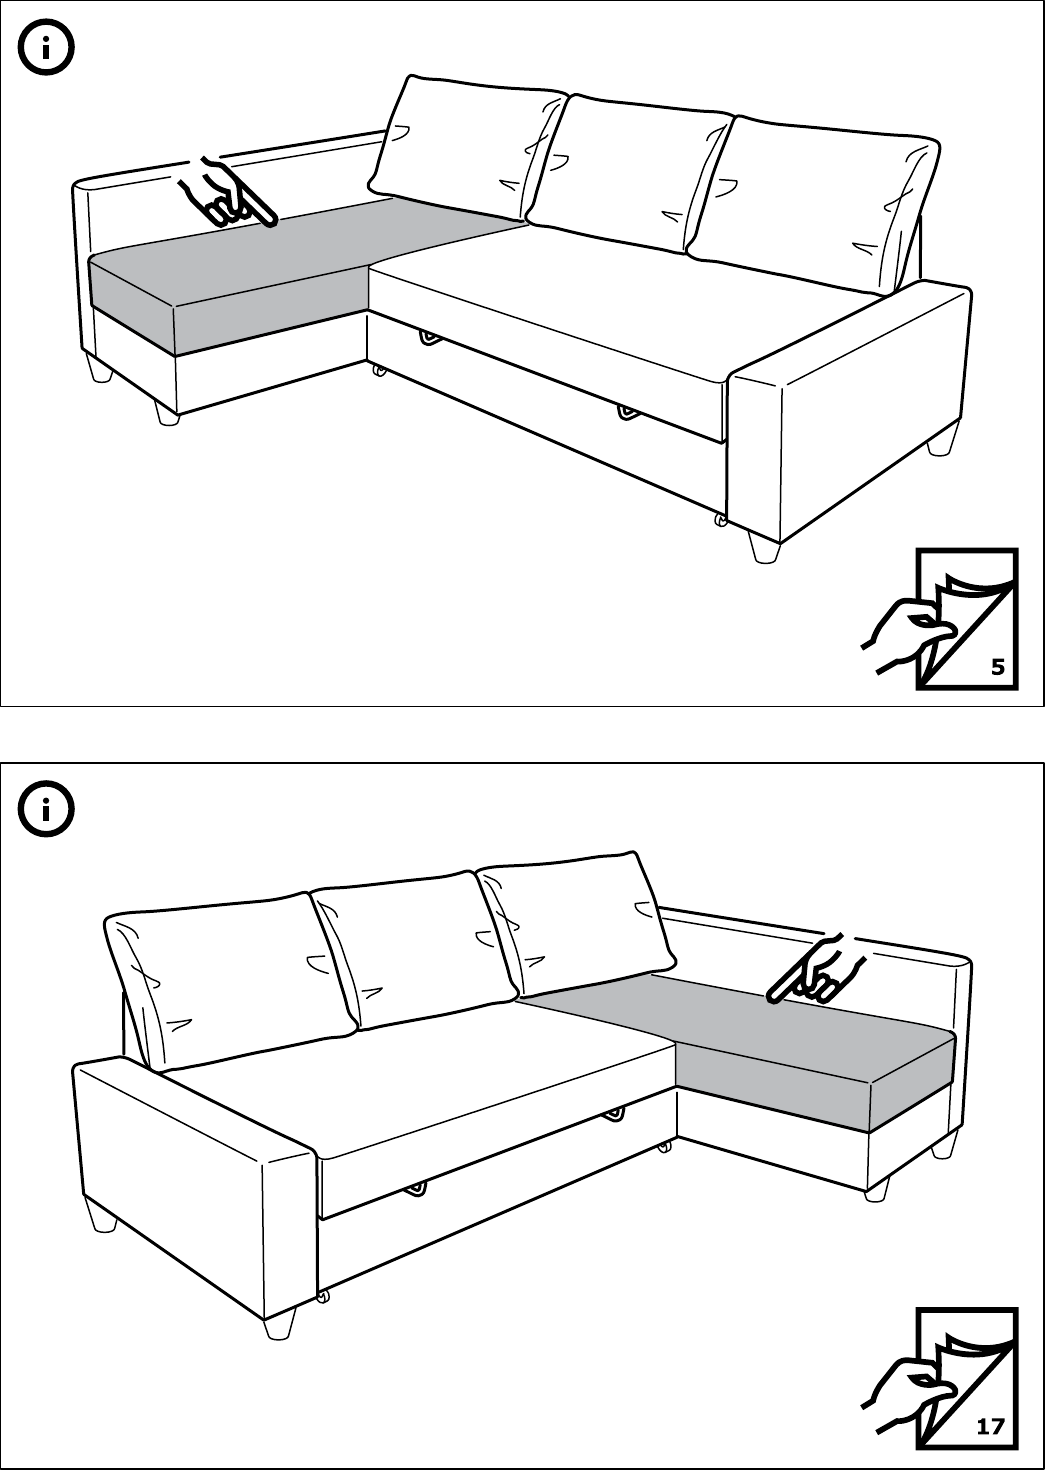 Manual Ikea Friheten Page 1 Of 28, Friheten Sleeper Sofa Assembly Instructions